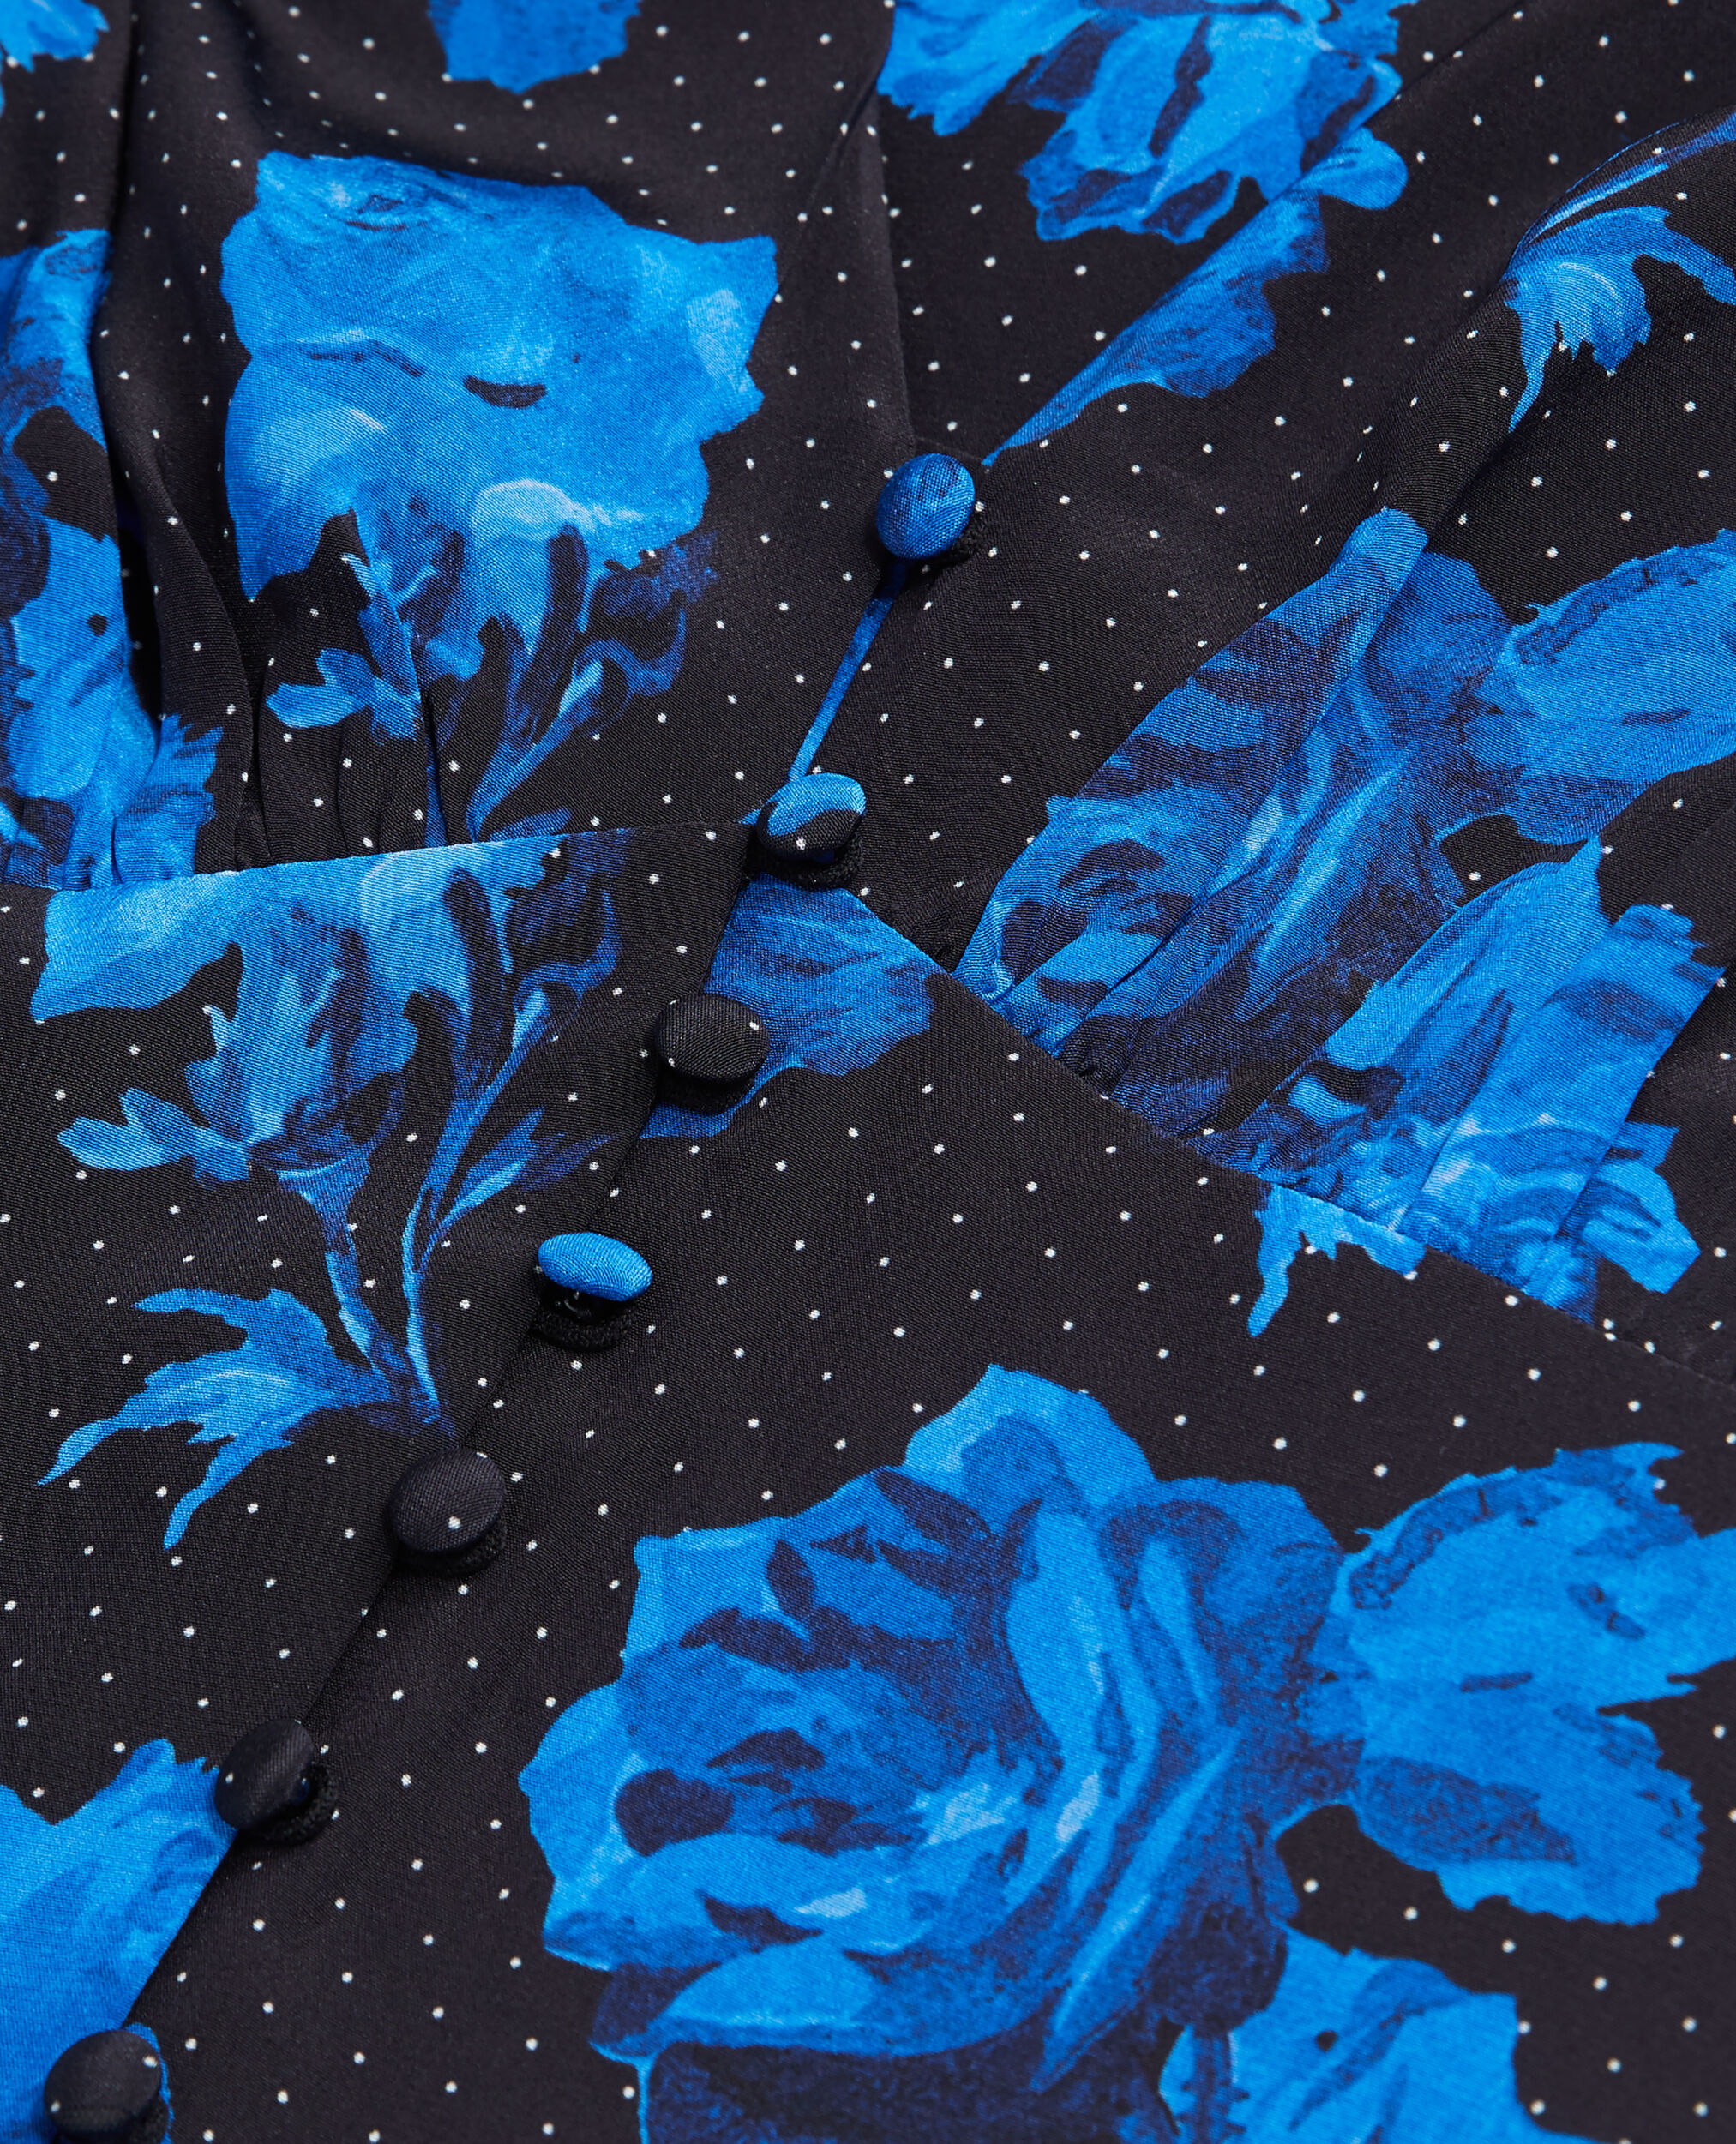 Langes Kleid aus Seide mit Print, BLACK BLUE, hi-res image number null